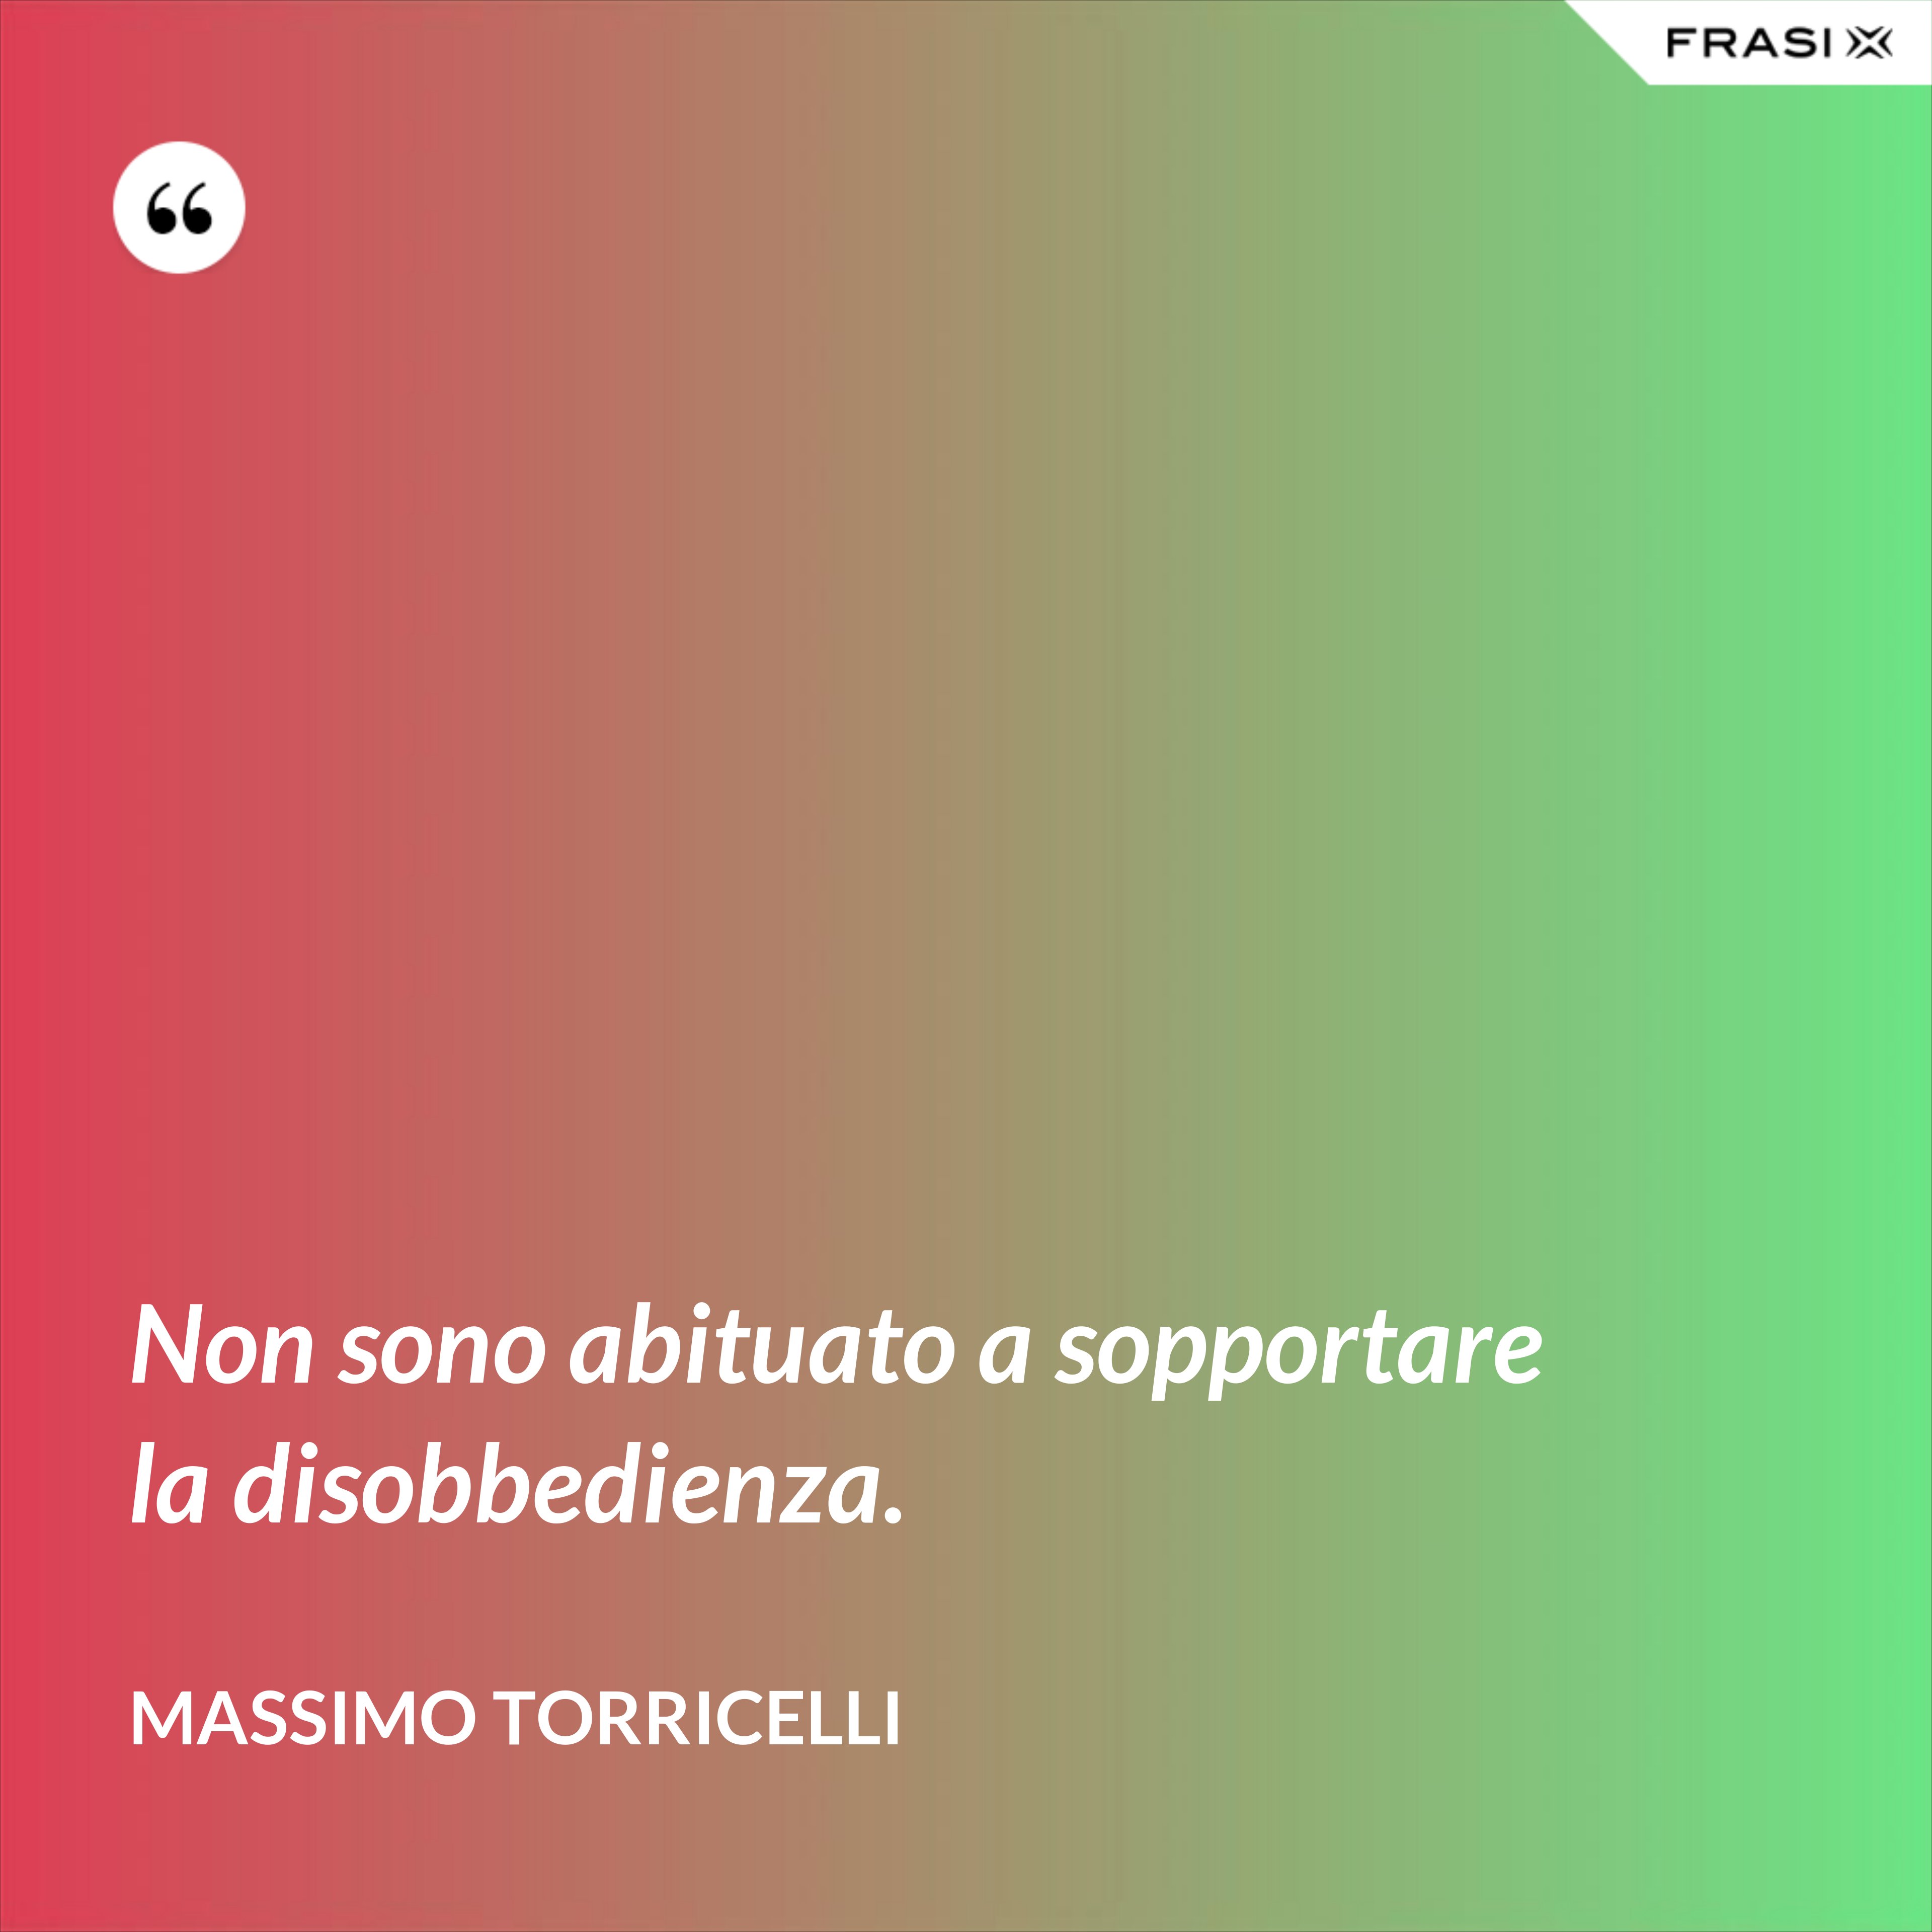 Non sono abituato a sopportare la disobbedienza. - Massimo Torricelli